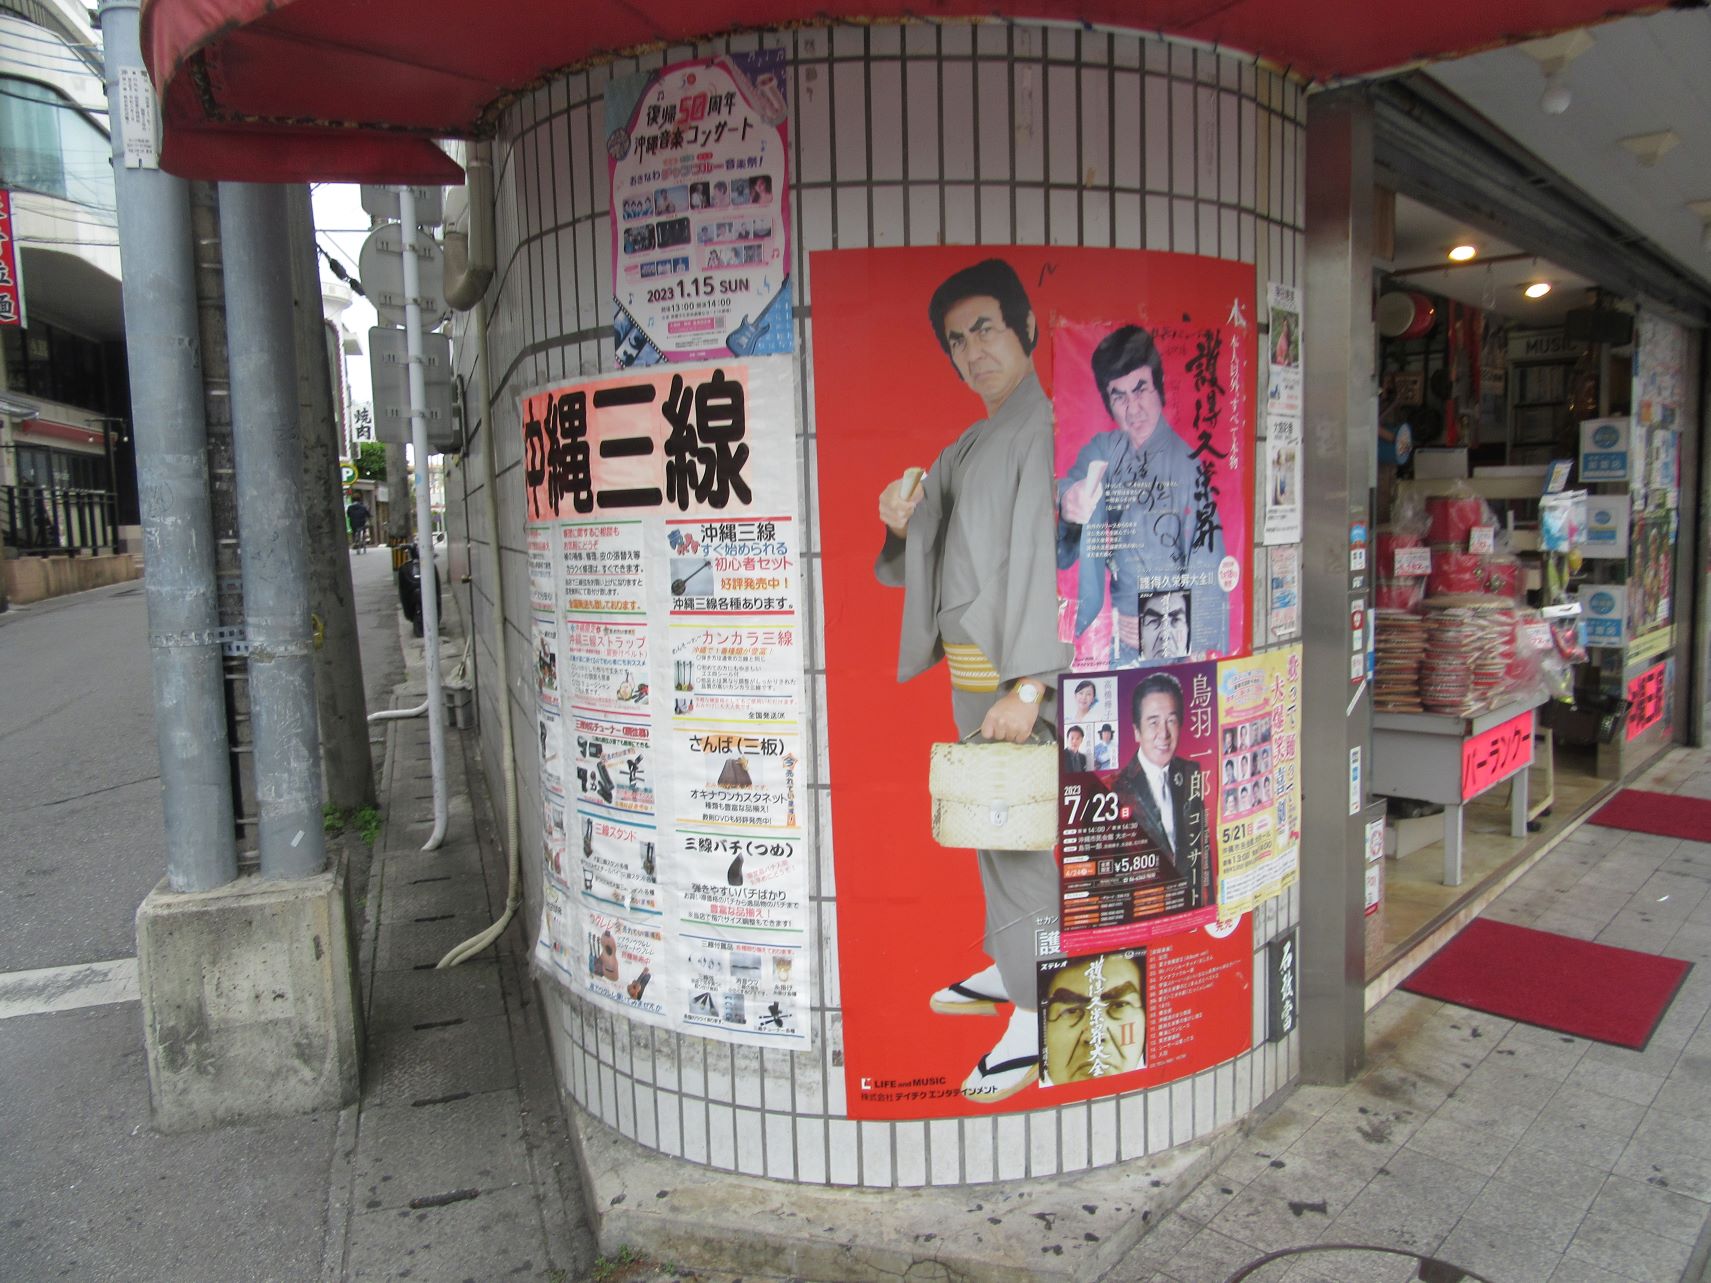 国際通りにある。護得久栄昇先生のポスター。